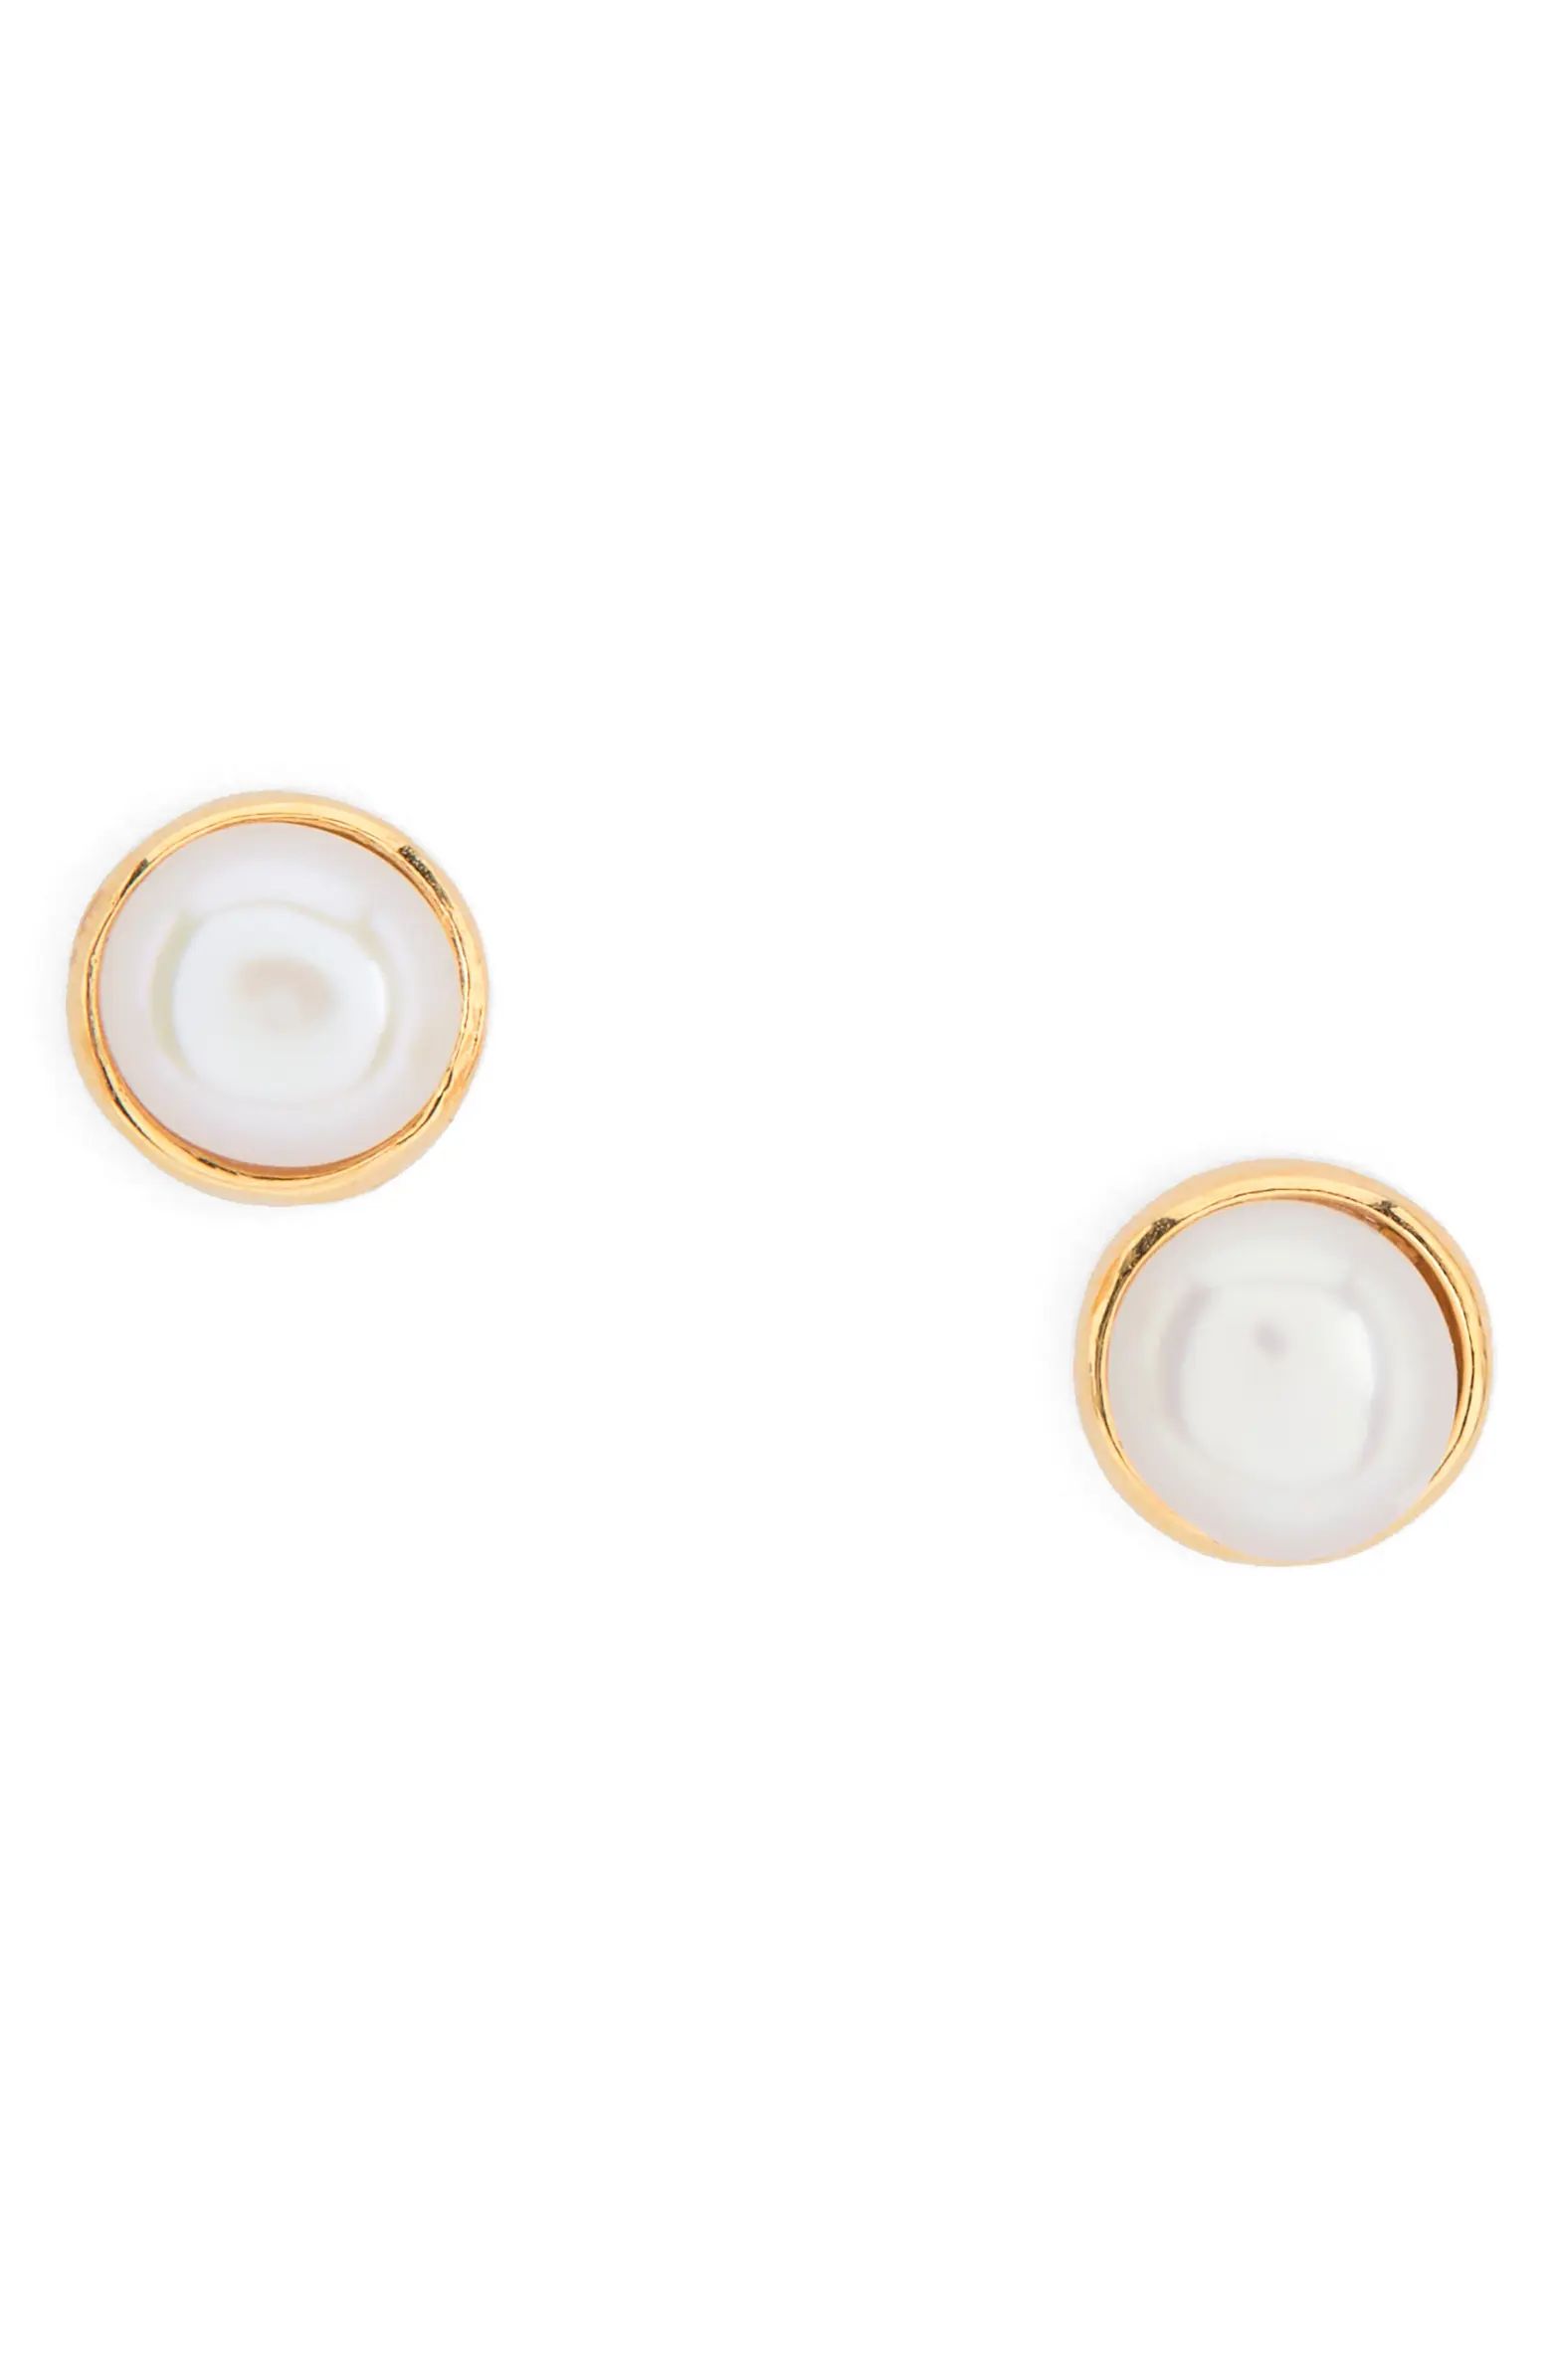 Monica Vinader Cultured Pearl Stud Earrings | Nordstrom | Nordstrom